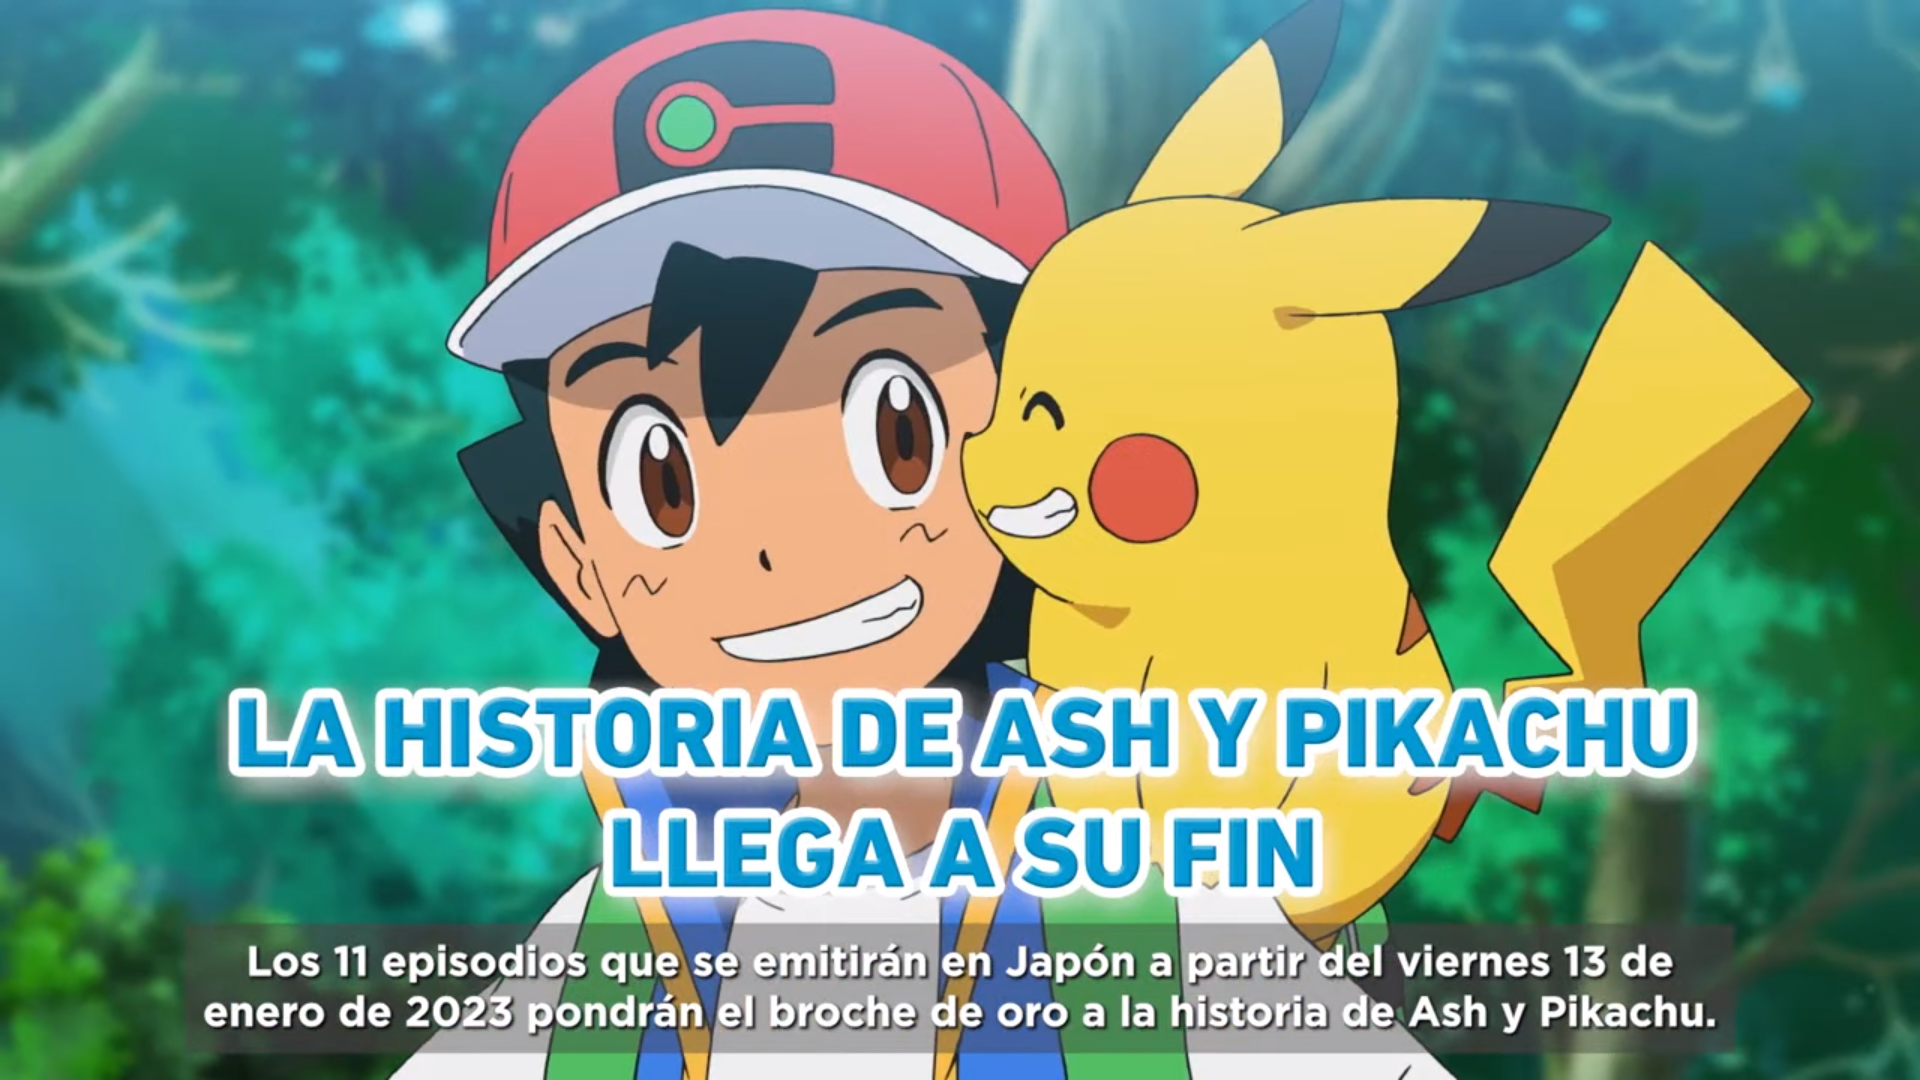 Ash y pikachu